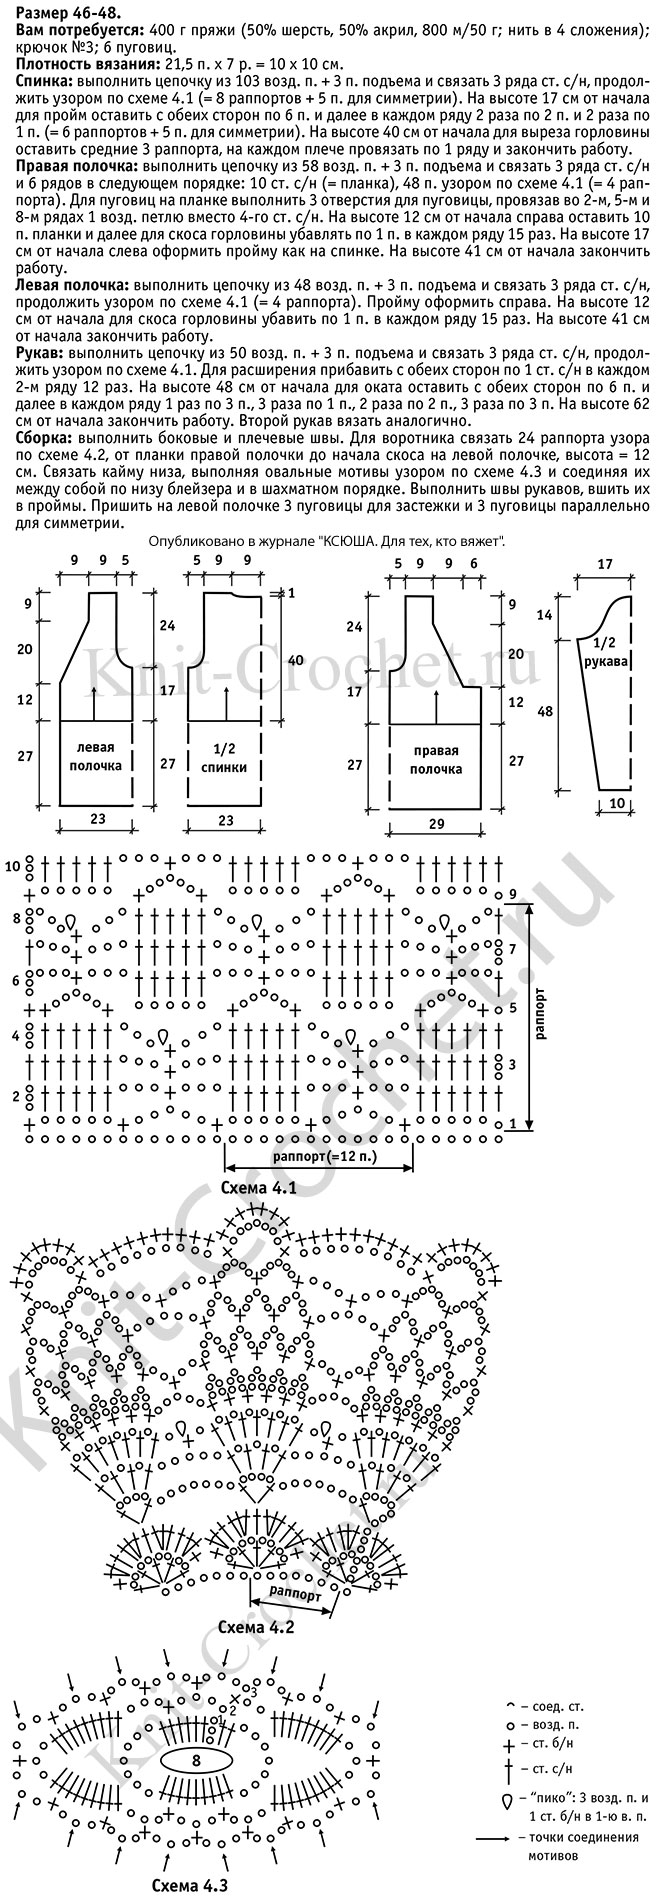 Выкройка, схемы узоров с описанием вязания крючком ажурного блейзера с каймой размера 46-48.